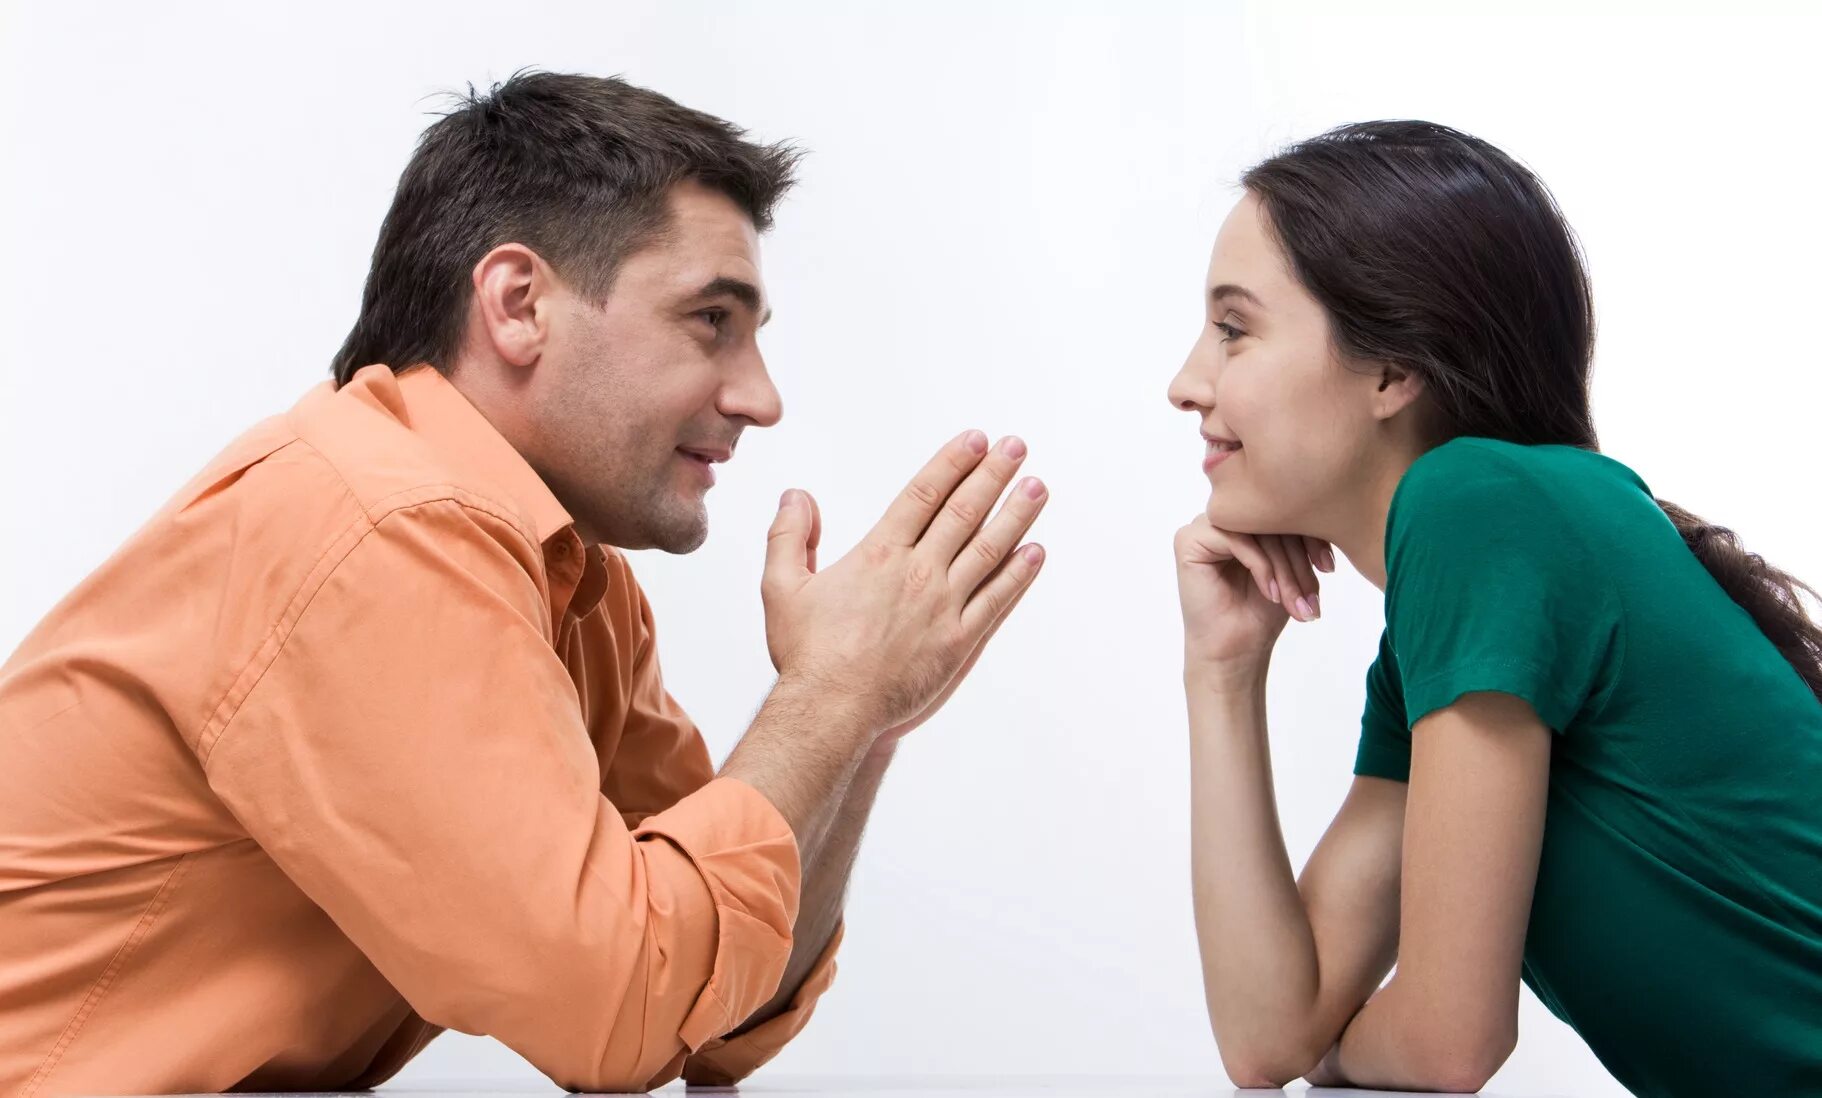 Наблюдать неприятный. Разговор между мужчиной и женщиной. Общение людей. Взаимопонимание в общении. Беседа мужчины и женщины.